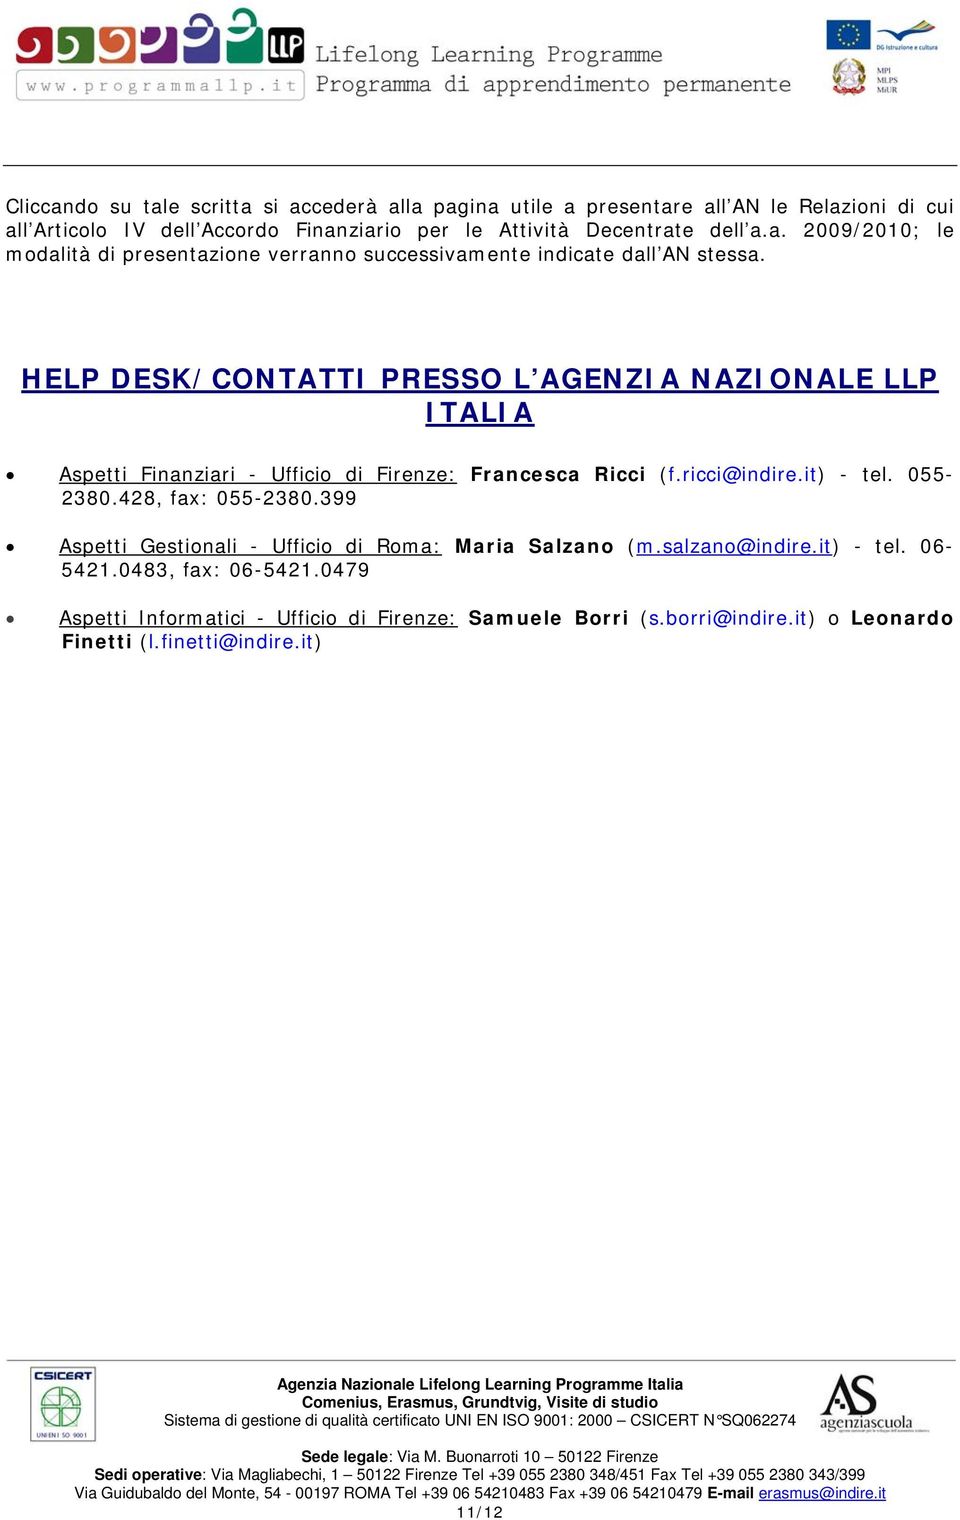 HELP DESK/CONTATTI PRESSO L AGENZIA NAZIONALE LLP ITALIA Aspetti Finanziari - Ufficio di Firenze: Francesca Ricci (f.ricci@indire.it) - tel. 055-2380.